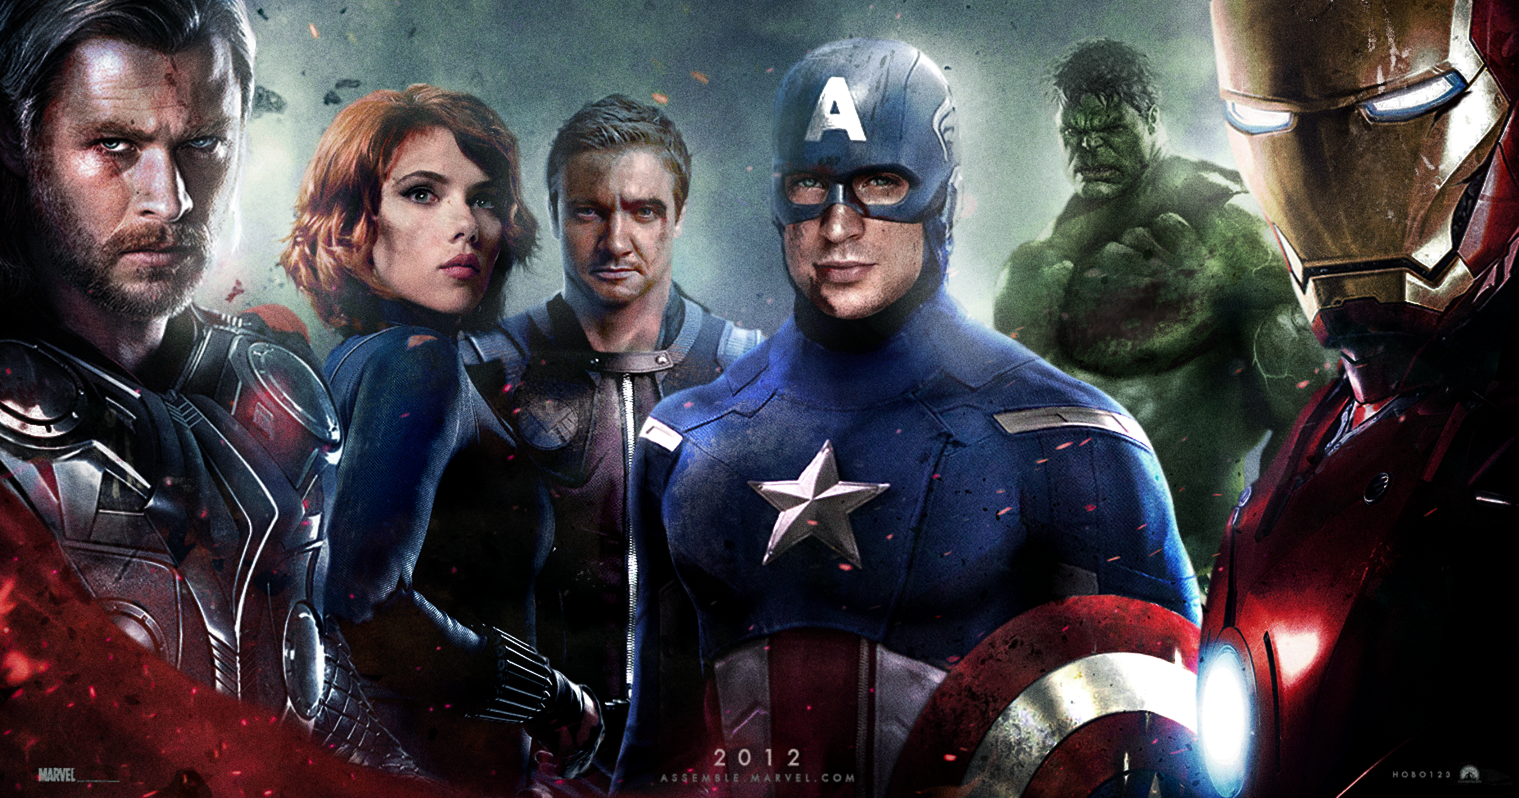 http://1.bp.blogspot.com/-0q00FYg2HqE/T6cMH2SpVkI/AAAAAAAAM0A/L8_T_9L3XQ4/s1600/poster-of-The-Avengers-the-avengers-2012-movie-hd-desktop-wallpaper-screensaver-background.png